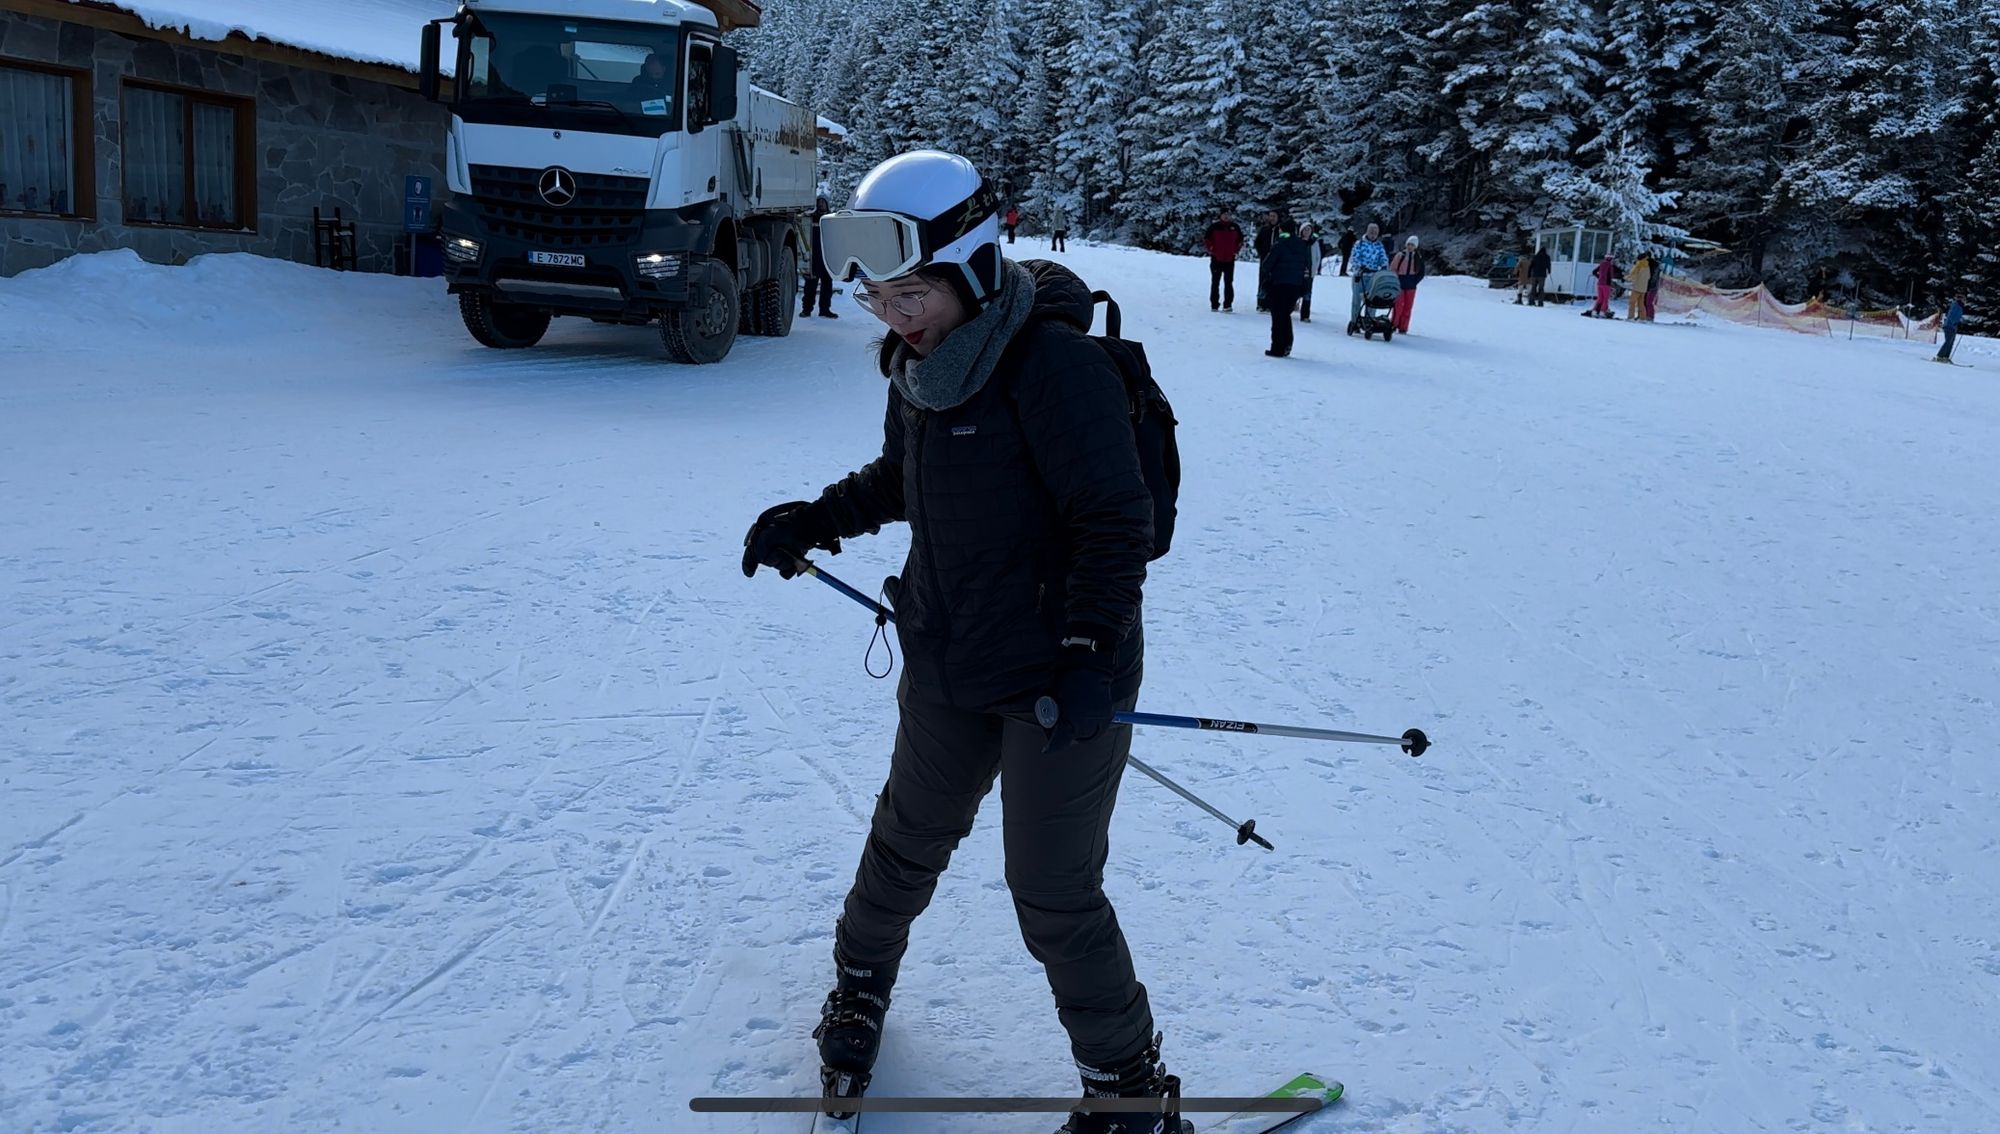 Esquiando em Bansko, Bulgária: Guia Completo